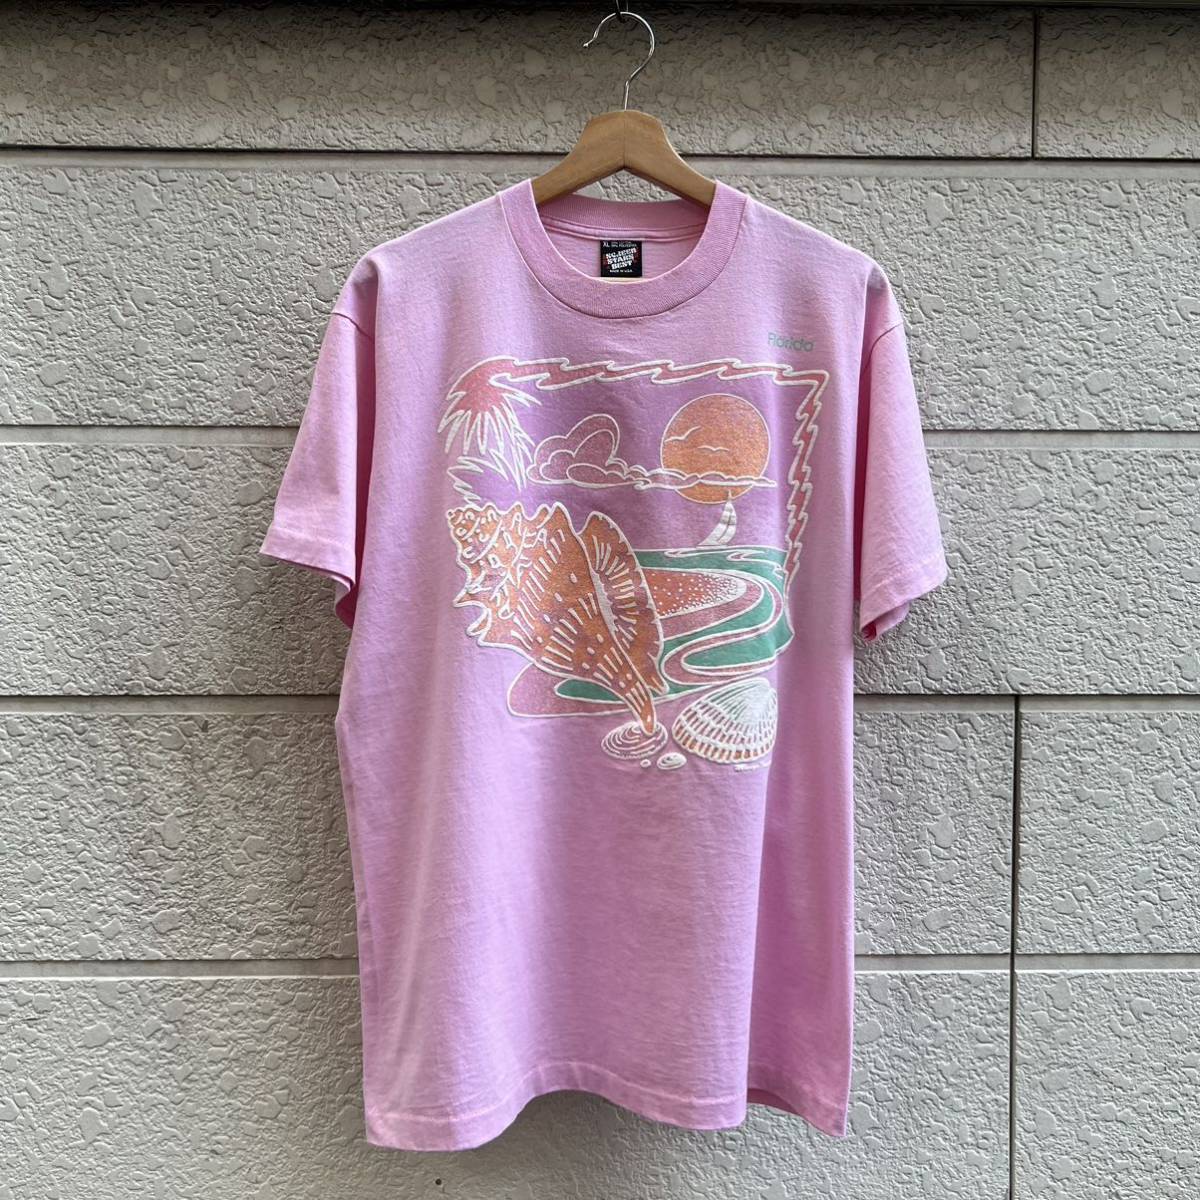 90s USA製 プリントTシャツ ピンク 半袖Tシャツ SCREEN STARS 